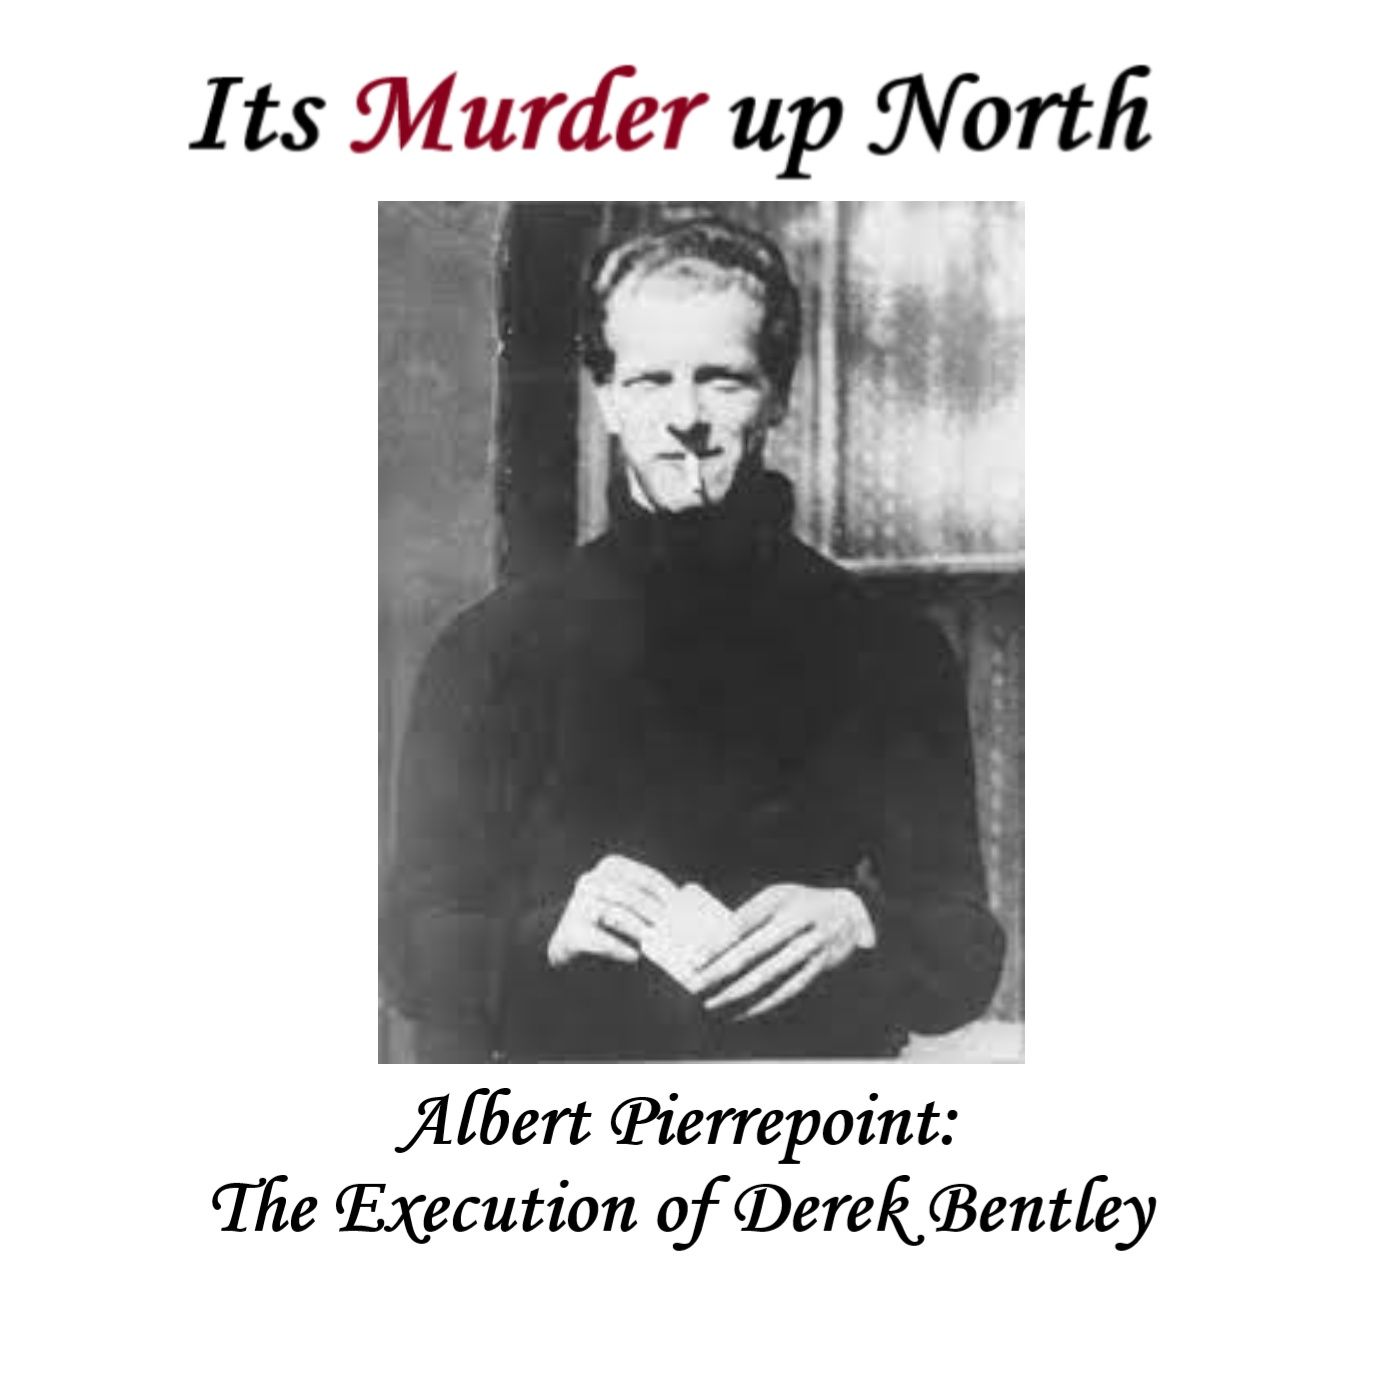 Albert Pierrepoint: The execution of  Derek Bentley